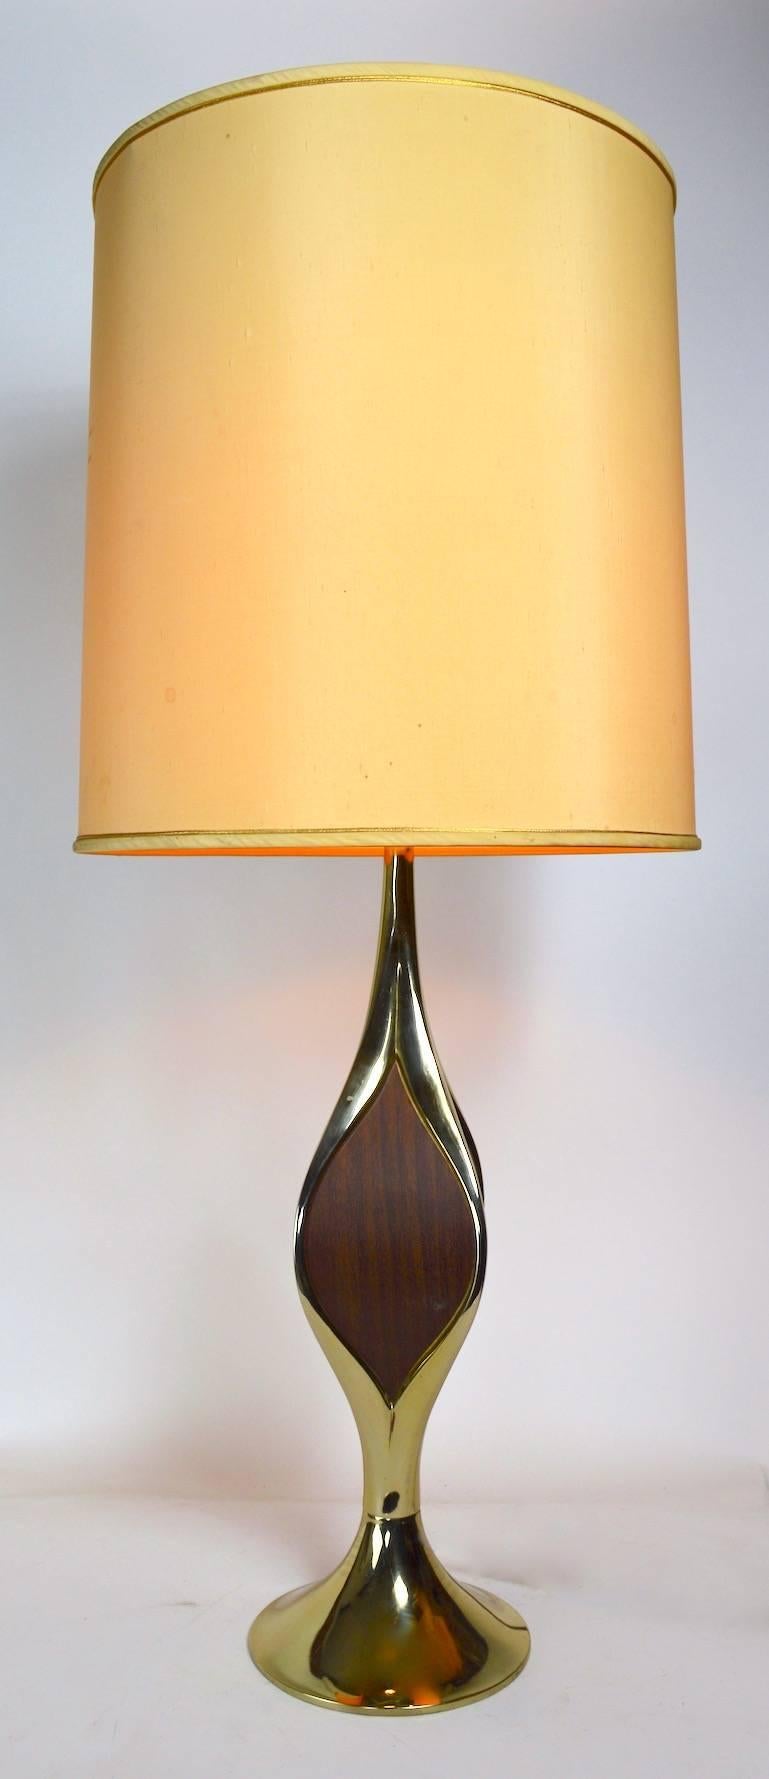 Lampe de table classique Gerald Thurston pour Lightolier, de style moderne du milieu du siècle. Métal de couleur laiton avec garniture en faux bois, sur une base en forme de goutte d'eau. Fonctionnement, propre, état d'origine, présente une usure